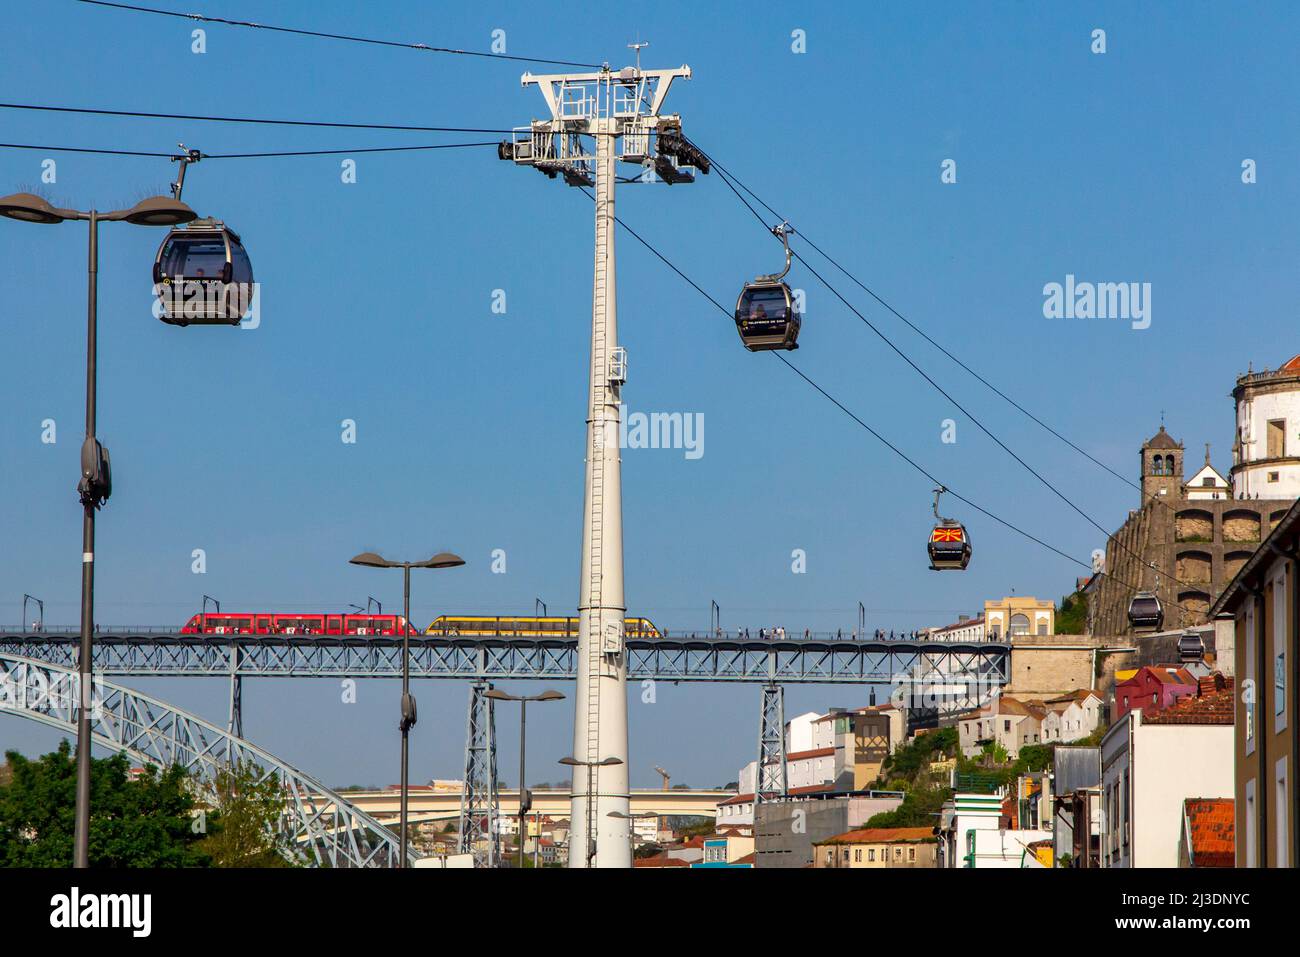 Métro do Porto tramway traversant le pont Luiz 1 pont au-dessus du fleuve Douro. Au premier plan se trouvent les téléphériques du Teleferico de Gaia Porto Portugal. Banque D'Images